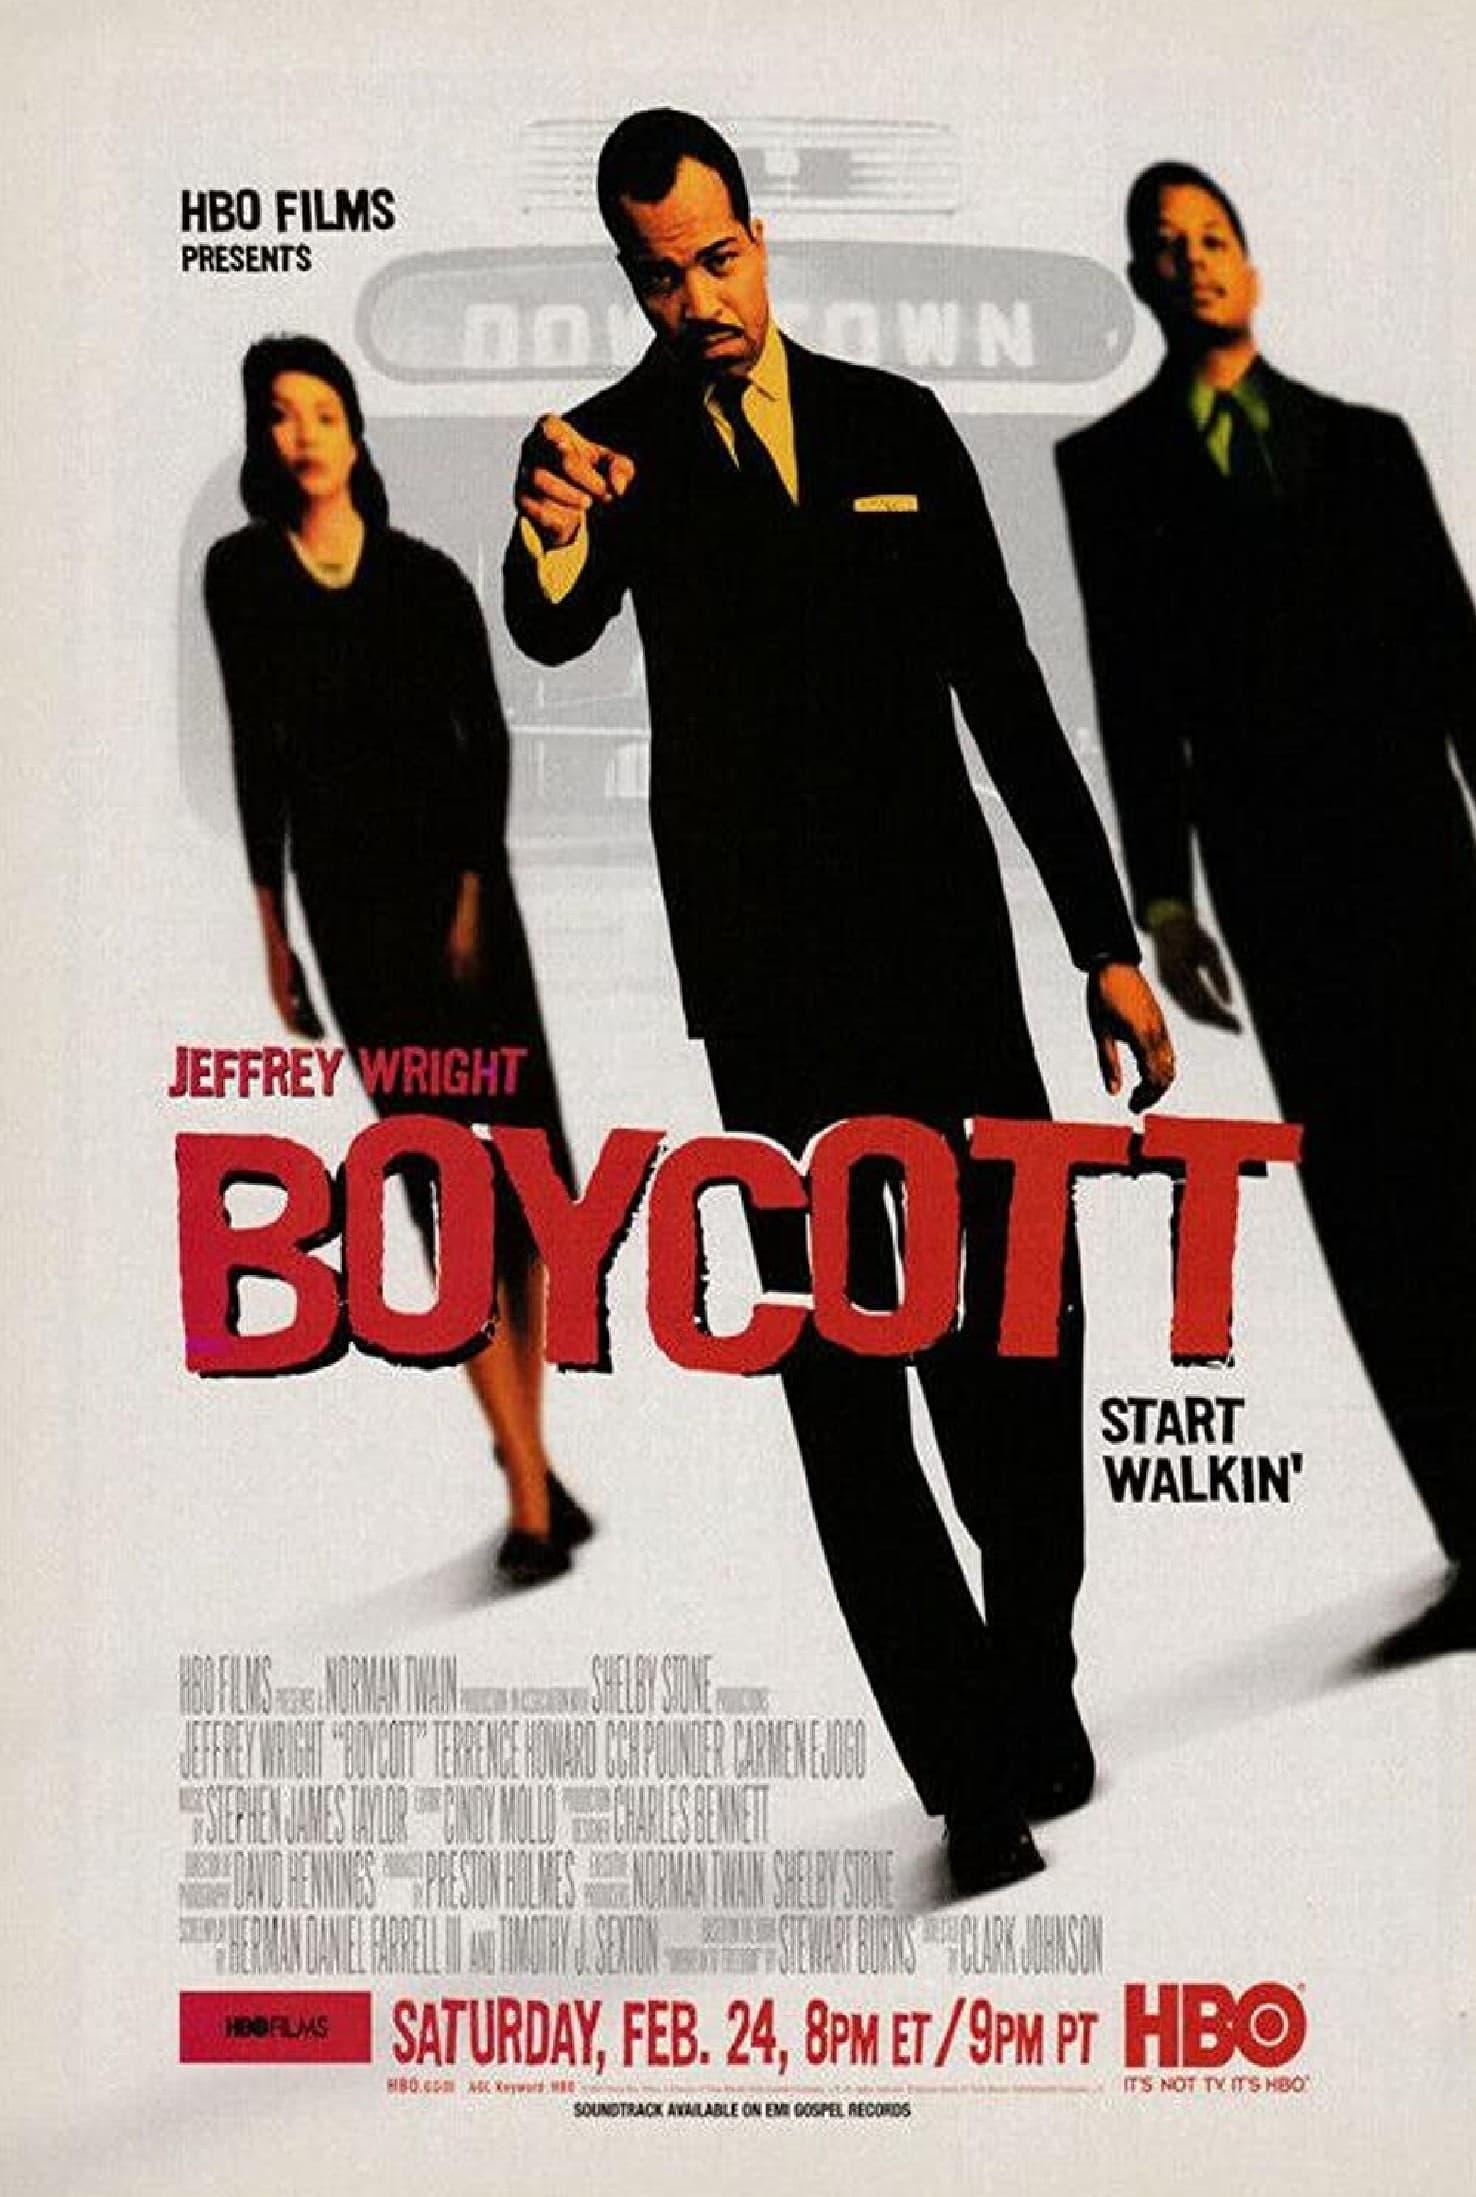 Boycott poster